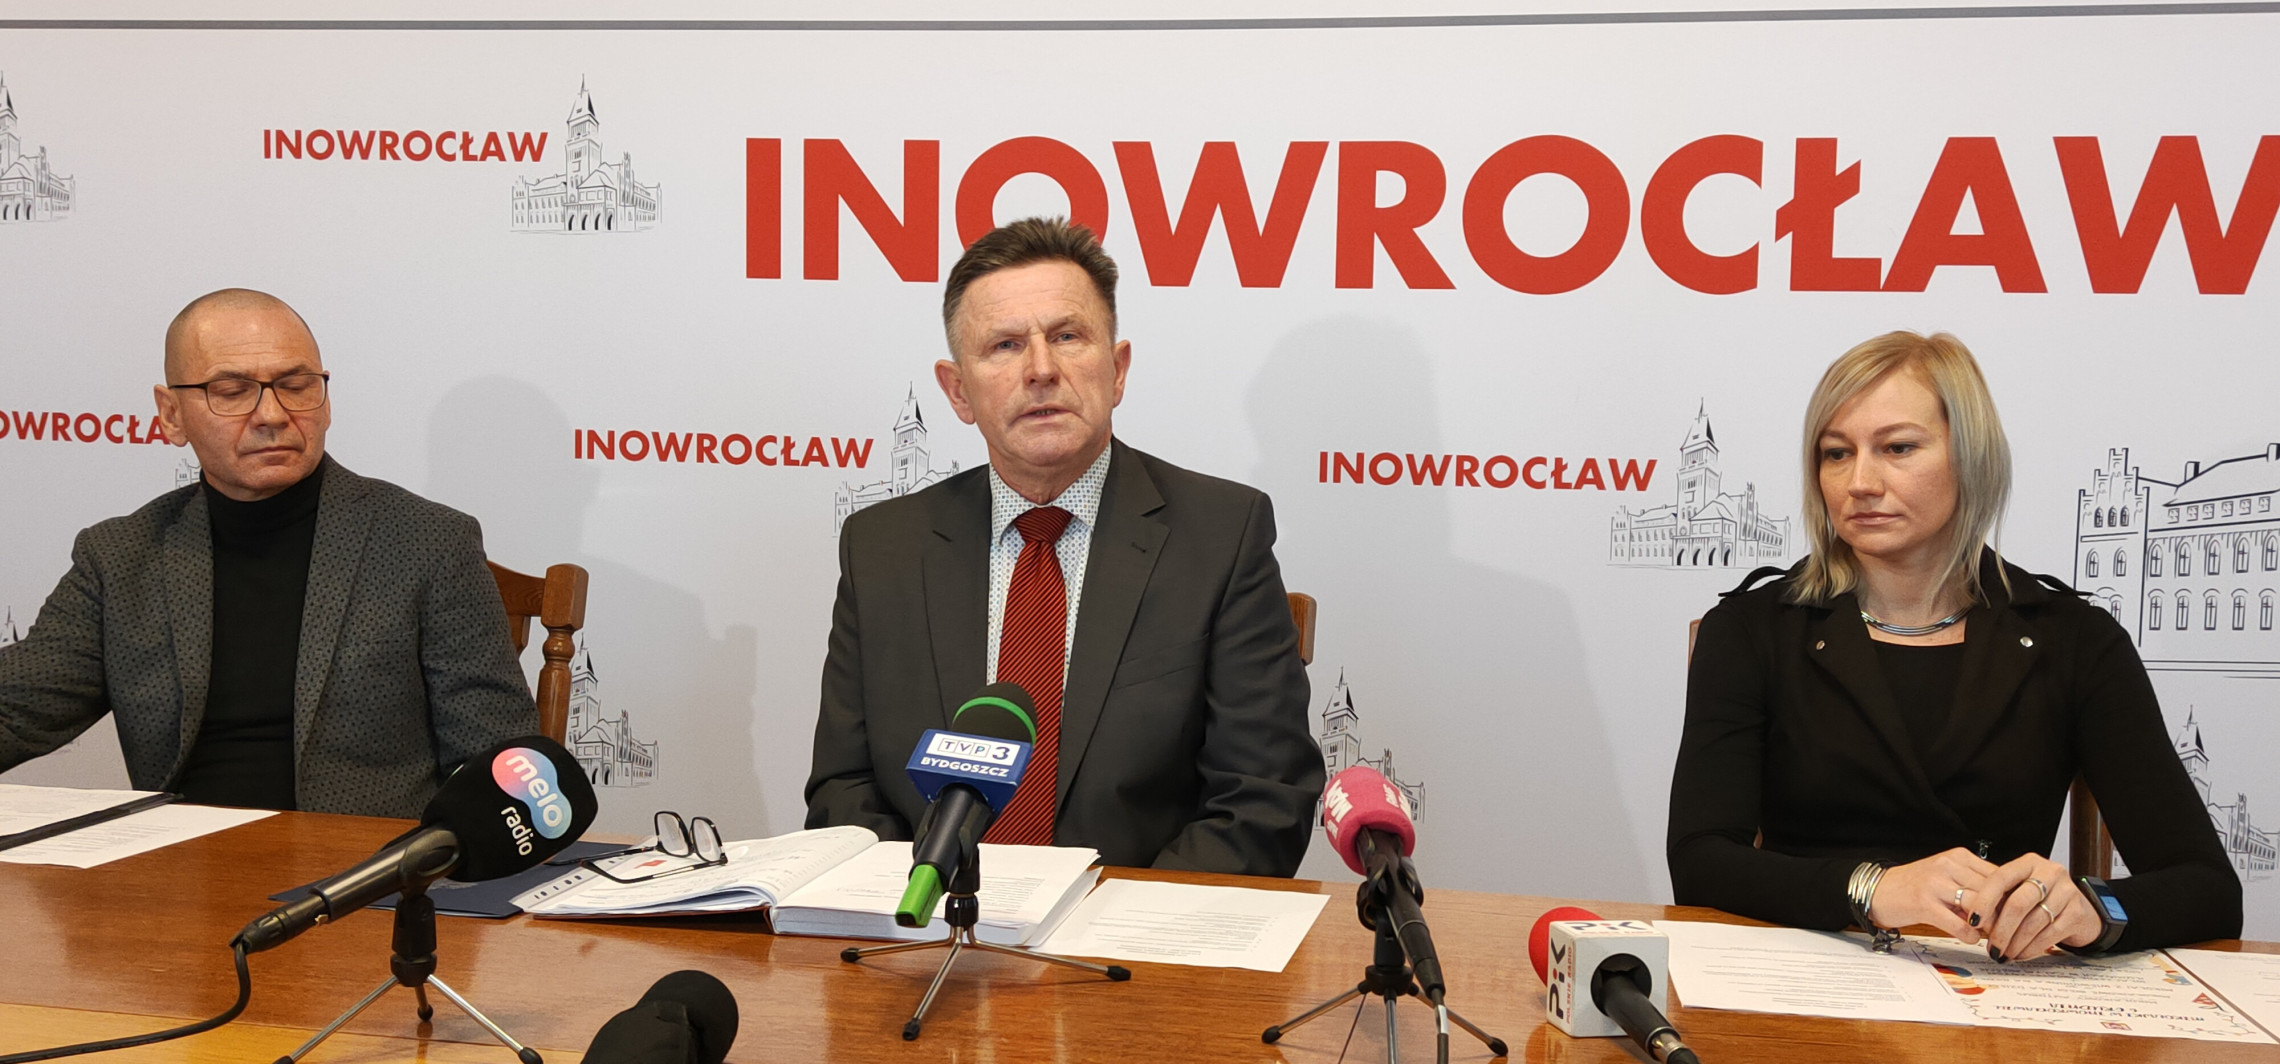 Inowrocław - Marek Słabiński: Nie będzie żadnego przewrotu pałacowego